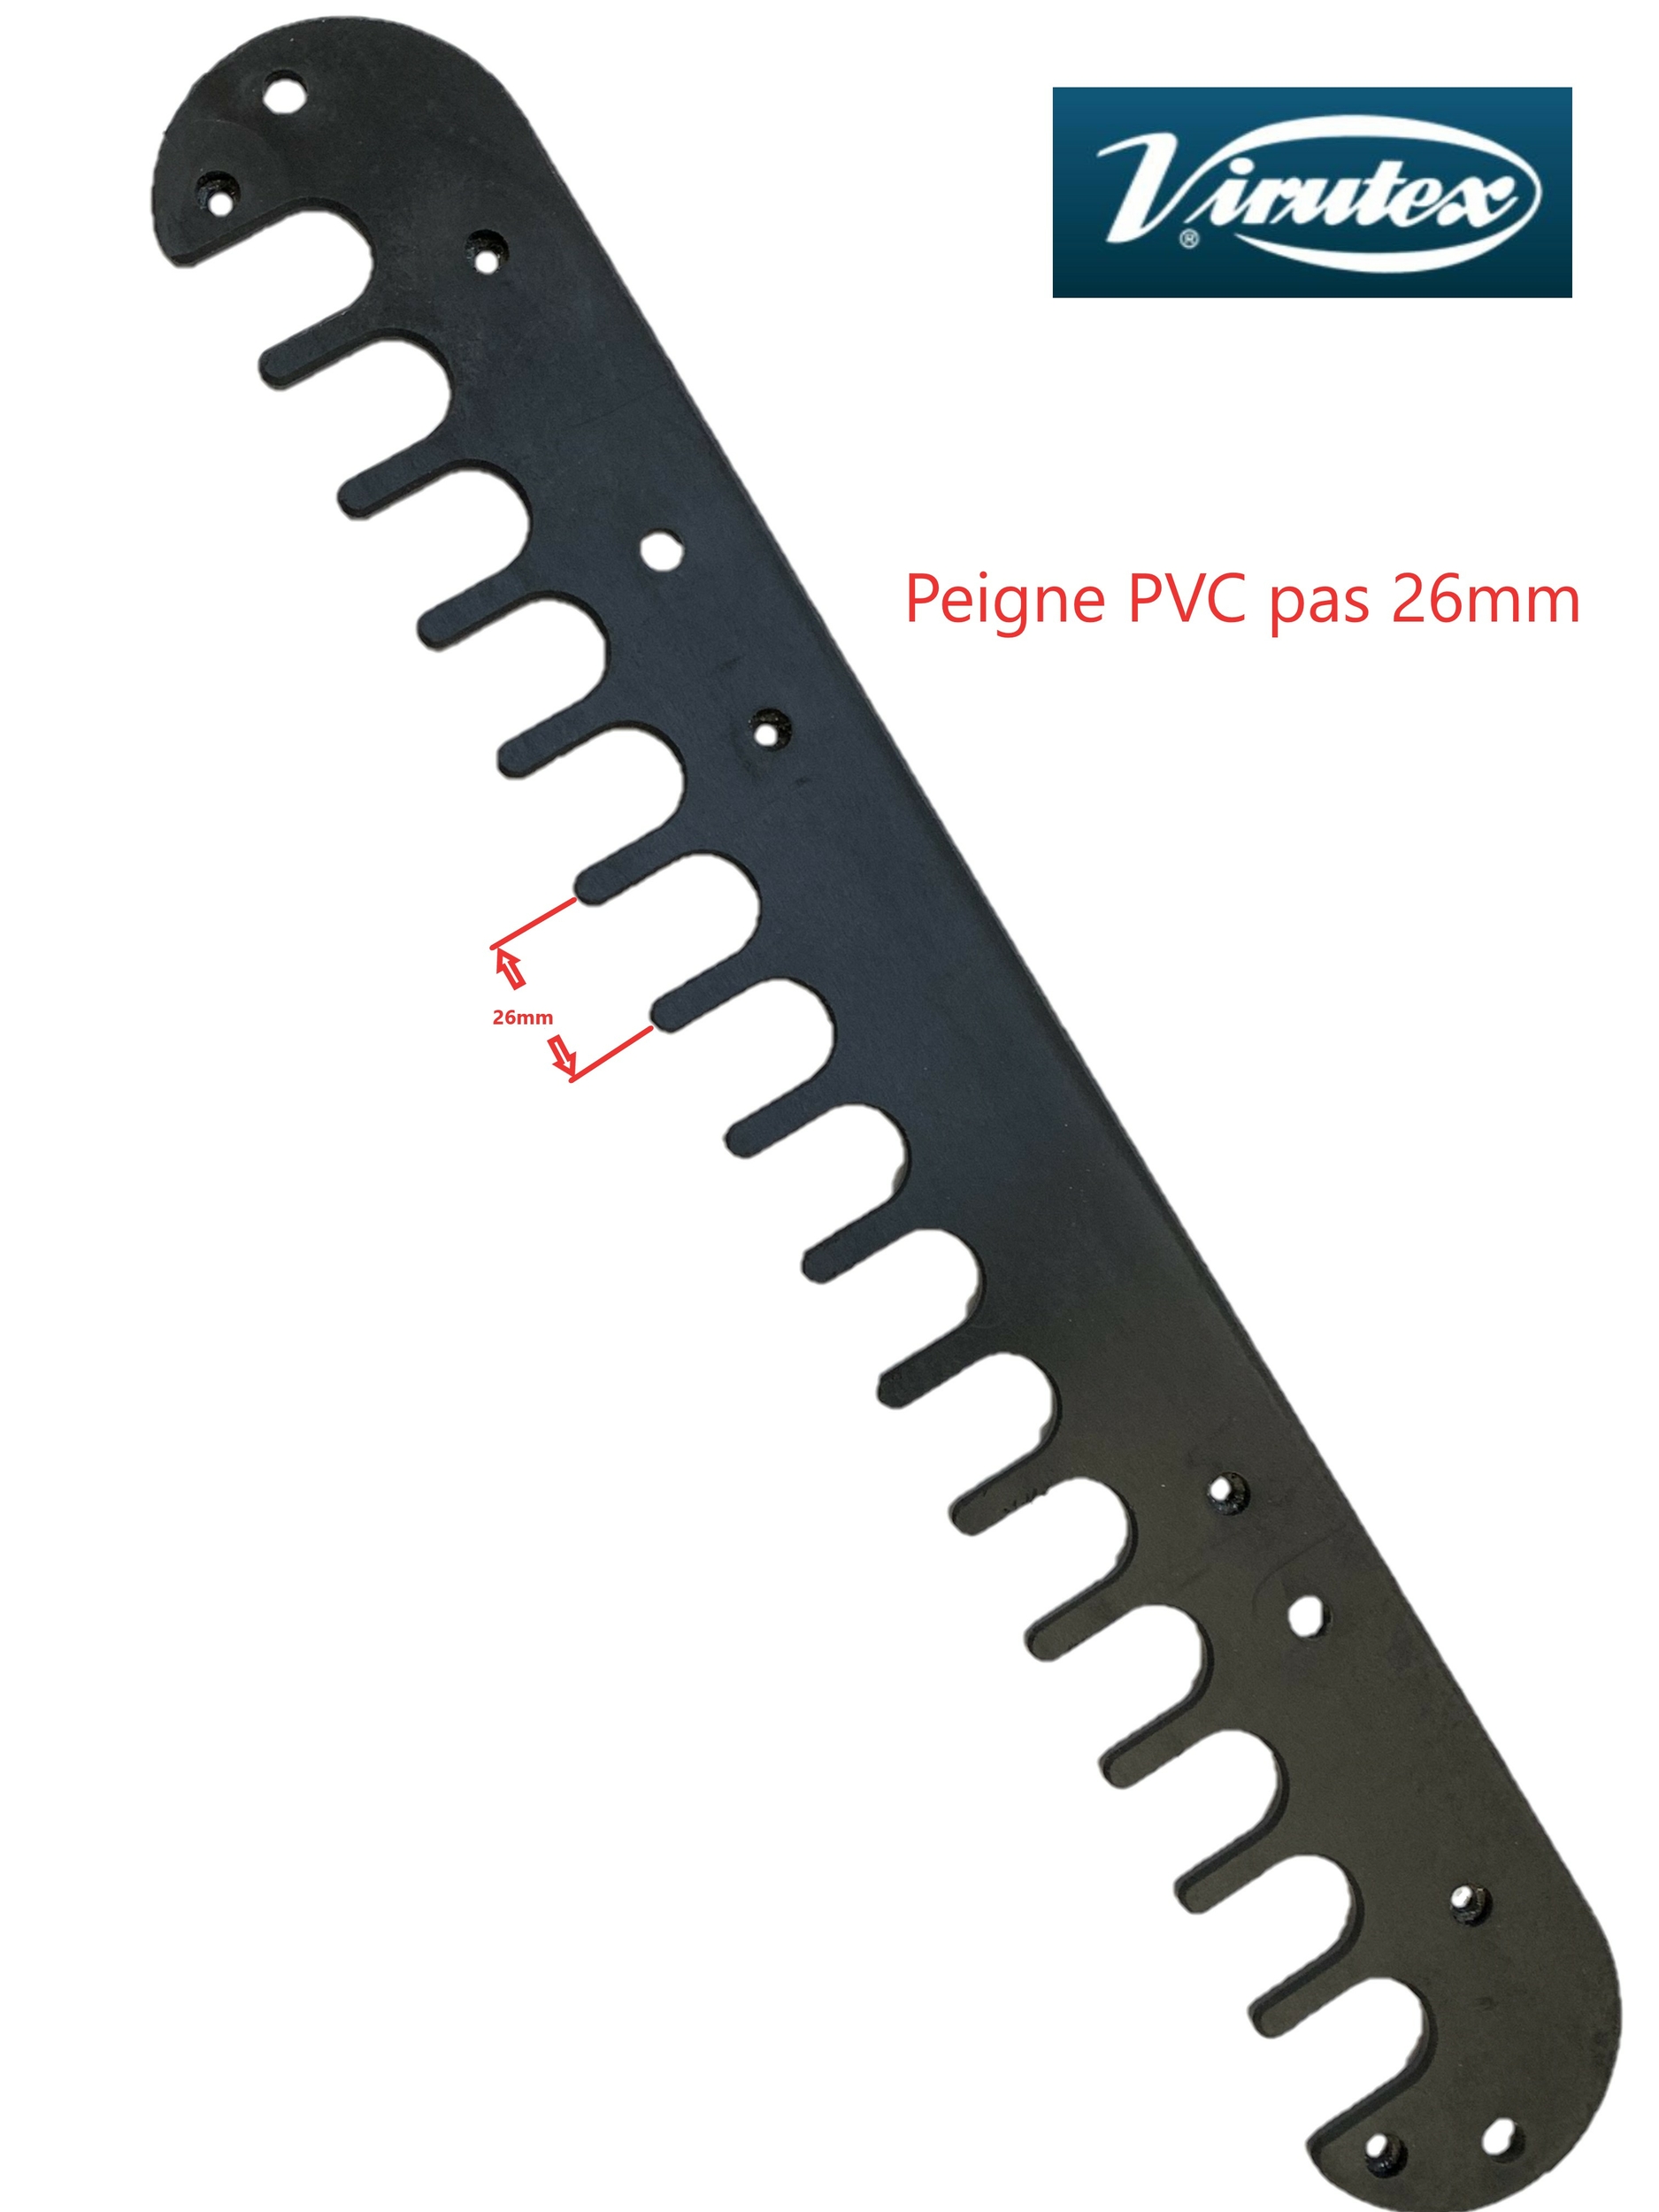 Peigne PVC copiage gabarit queue d'aronde 26mm PL11 Virutex 5002032